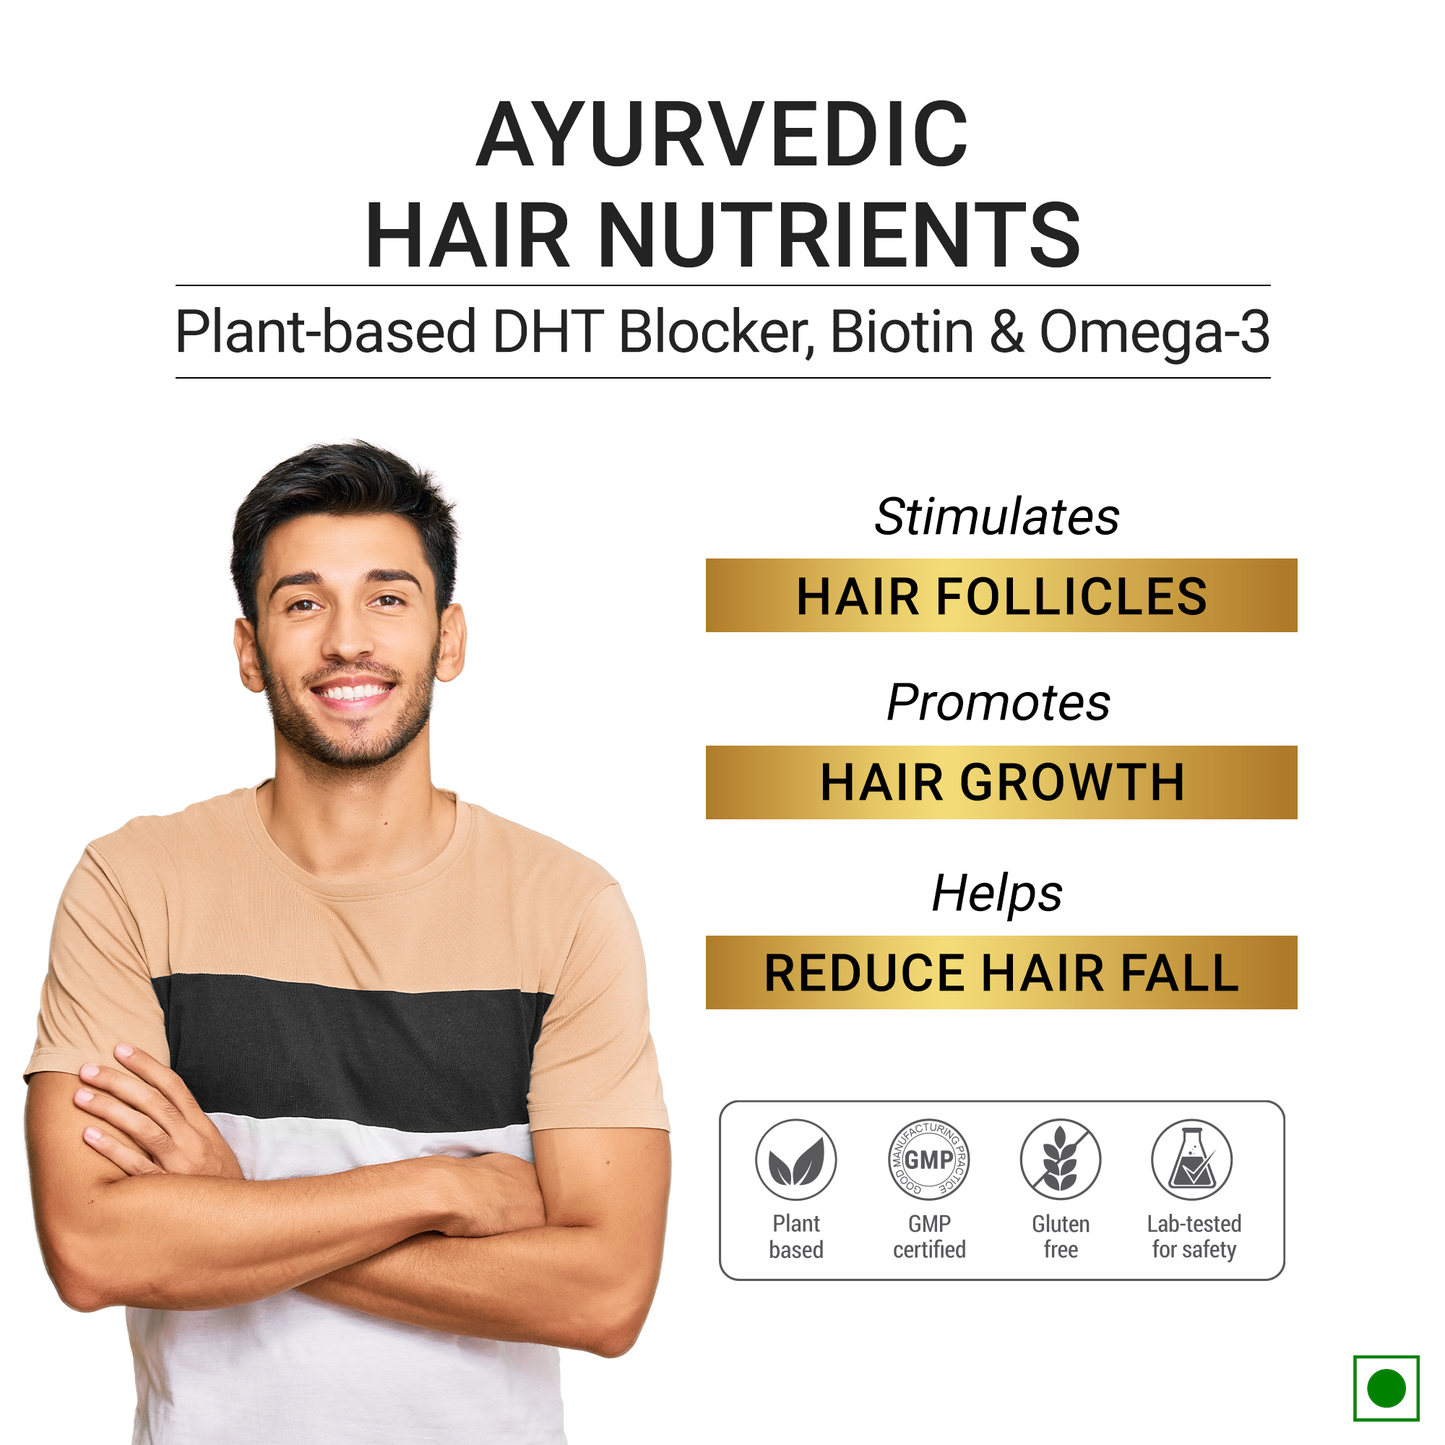 Ayurvedic Hair Nutrients